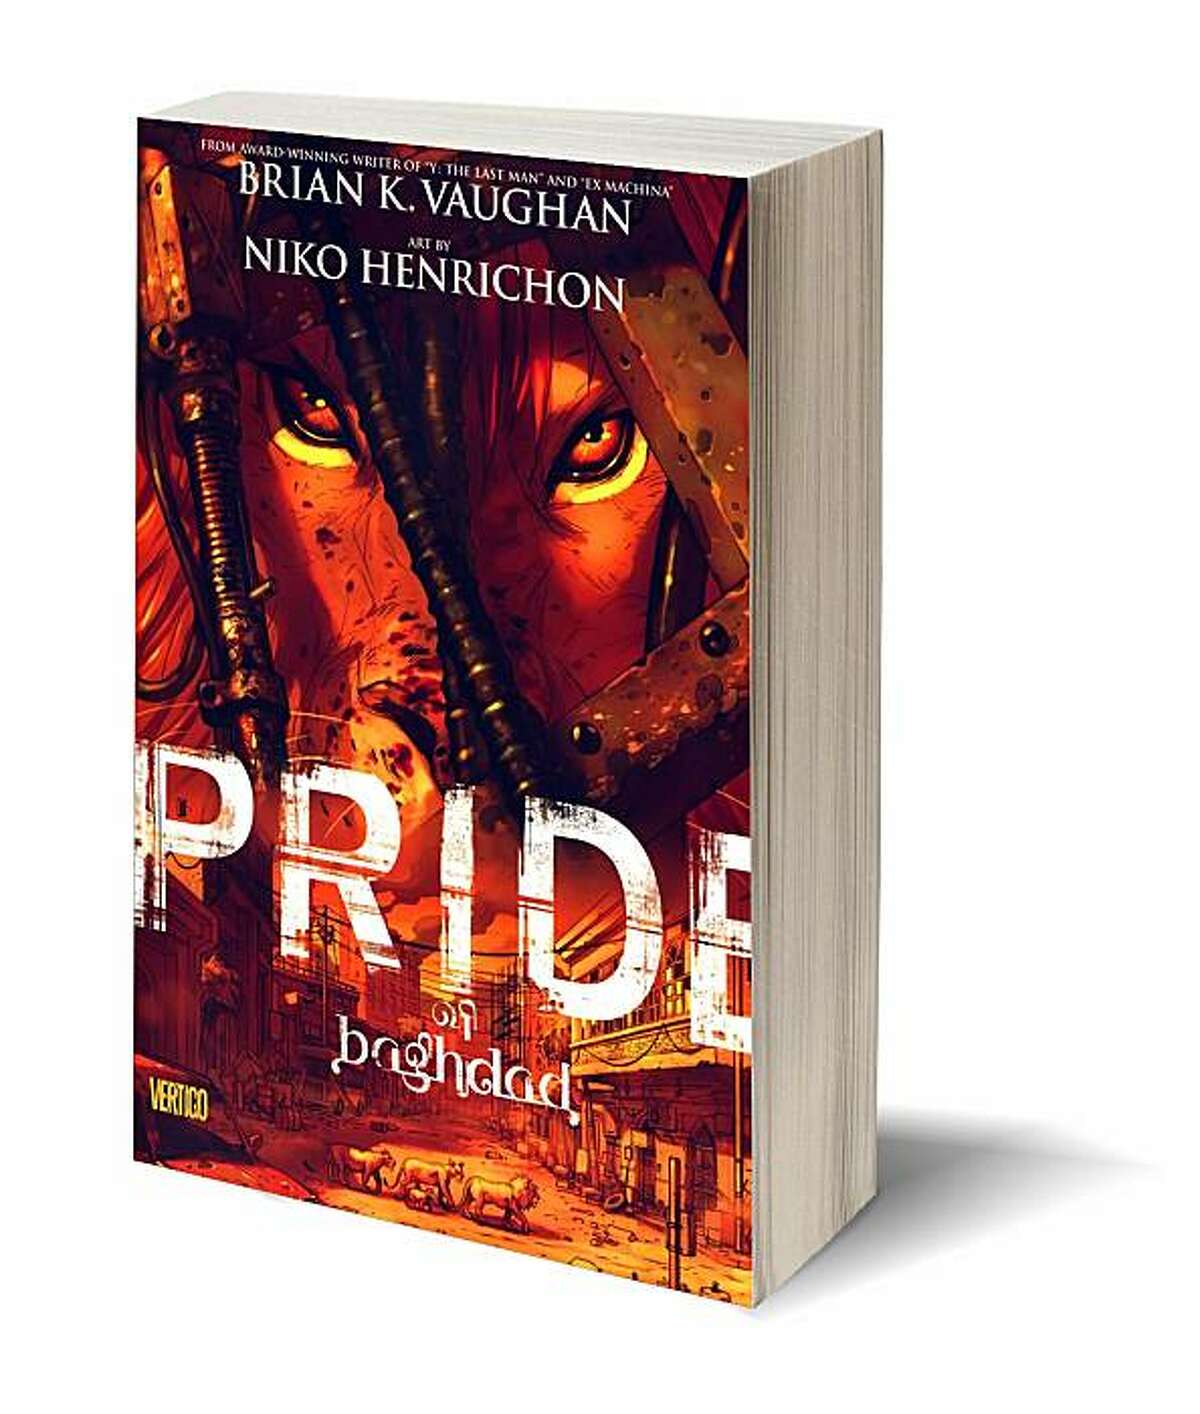 Pride of Baghdad by Brian K. Vaughan